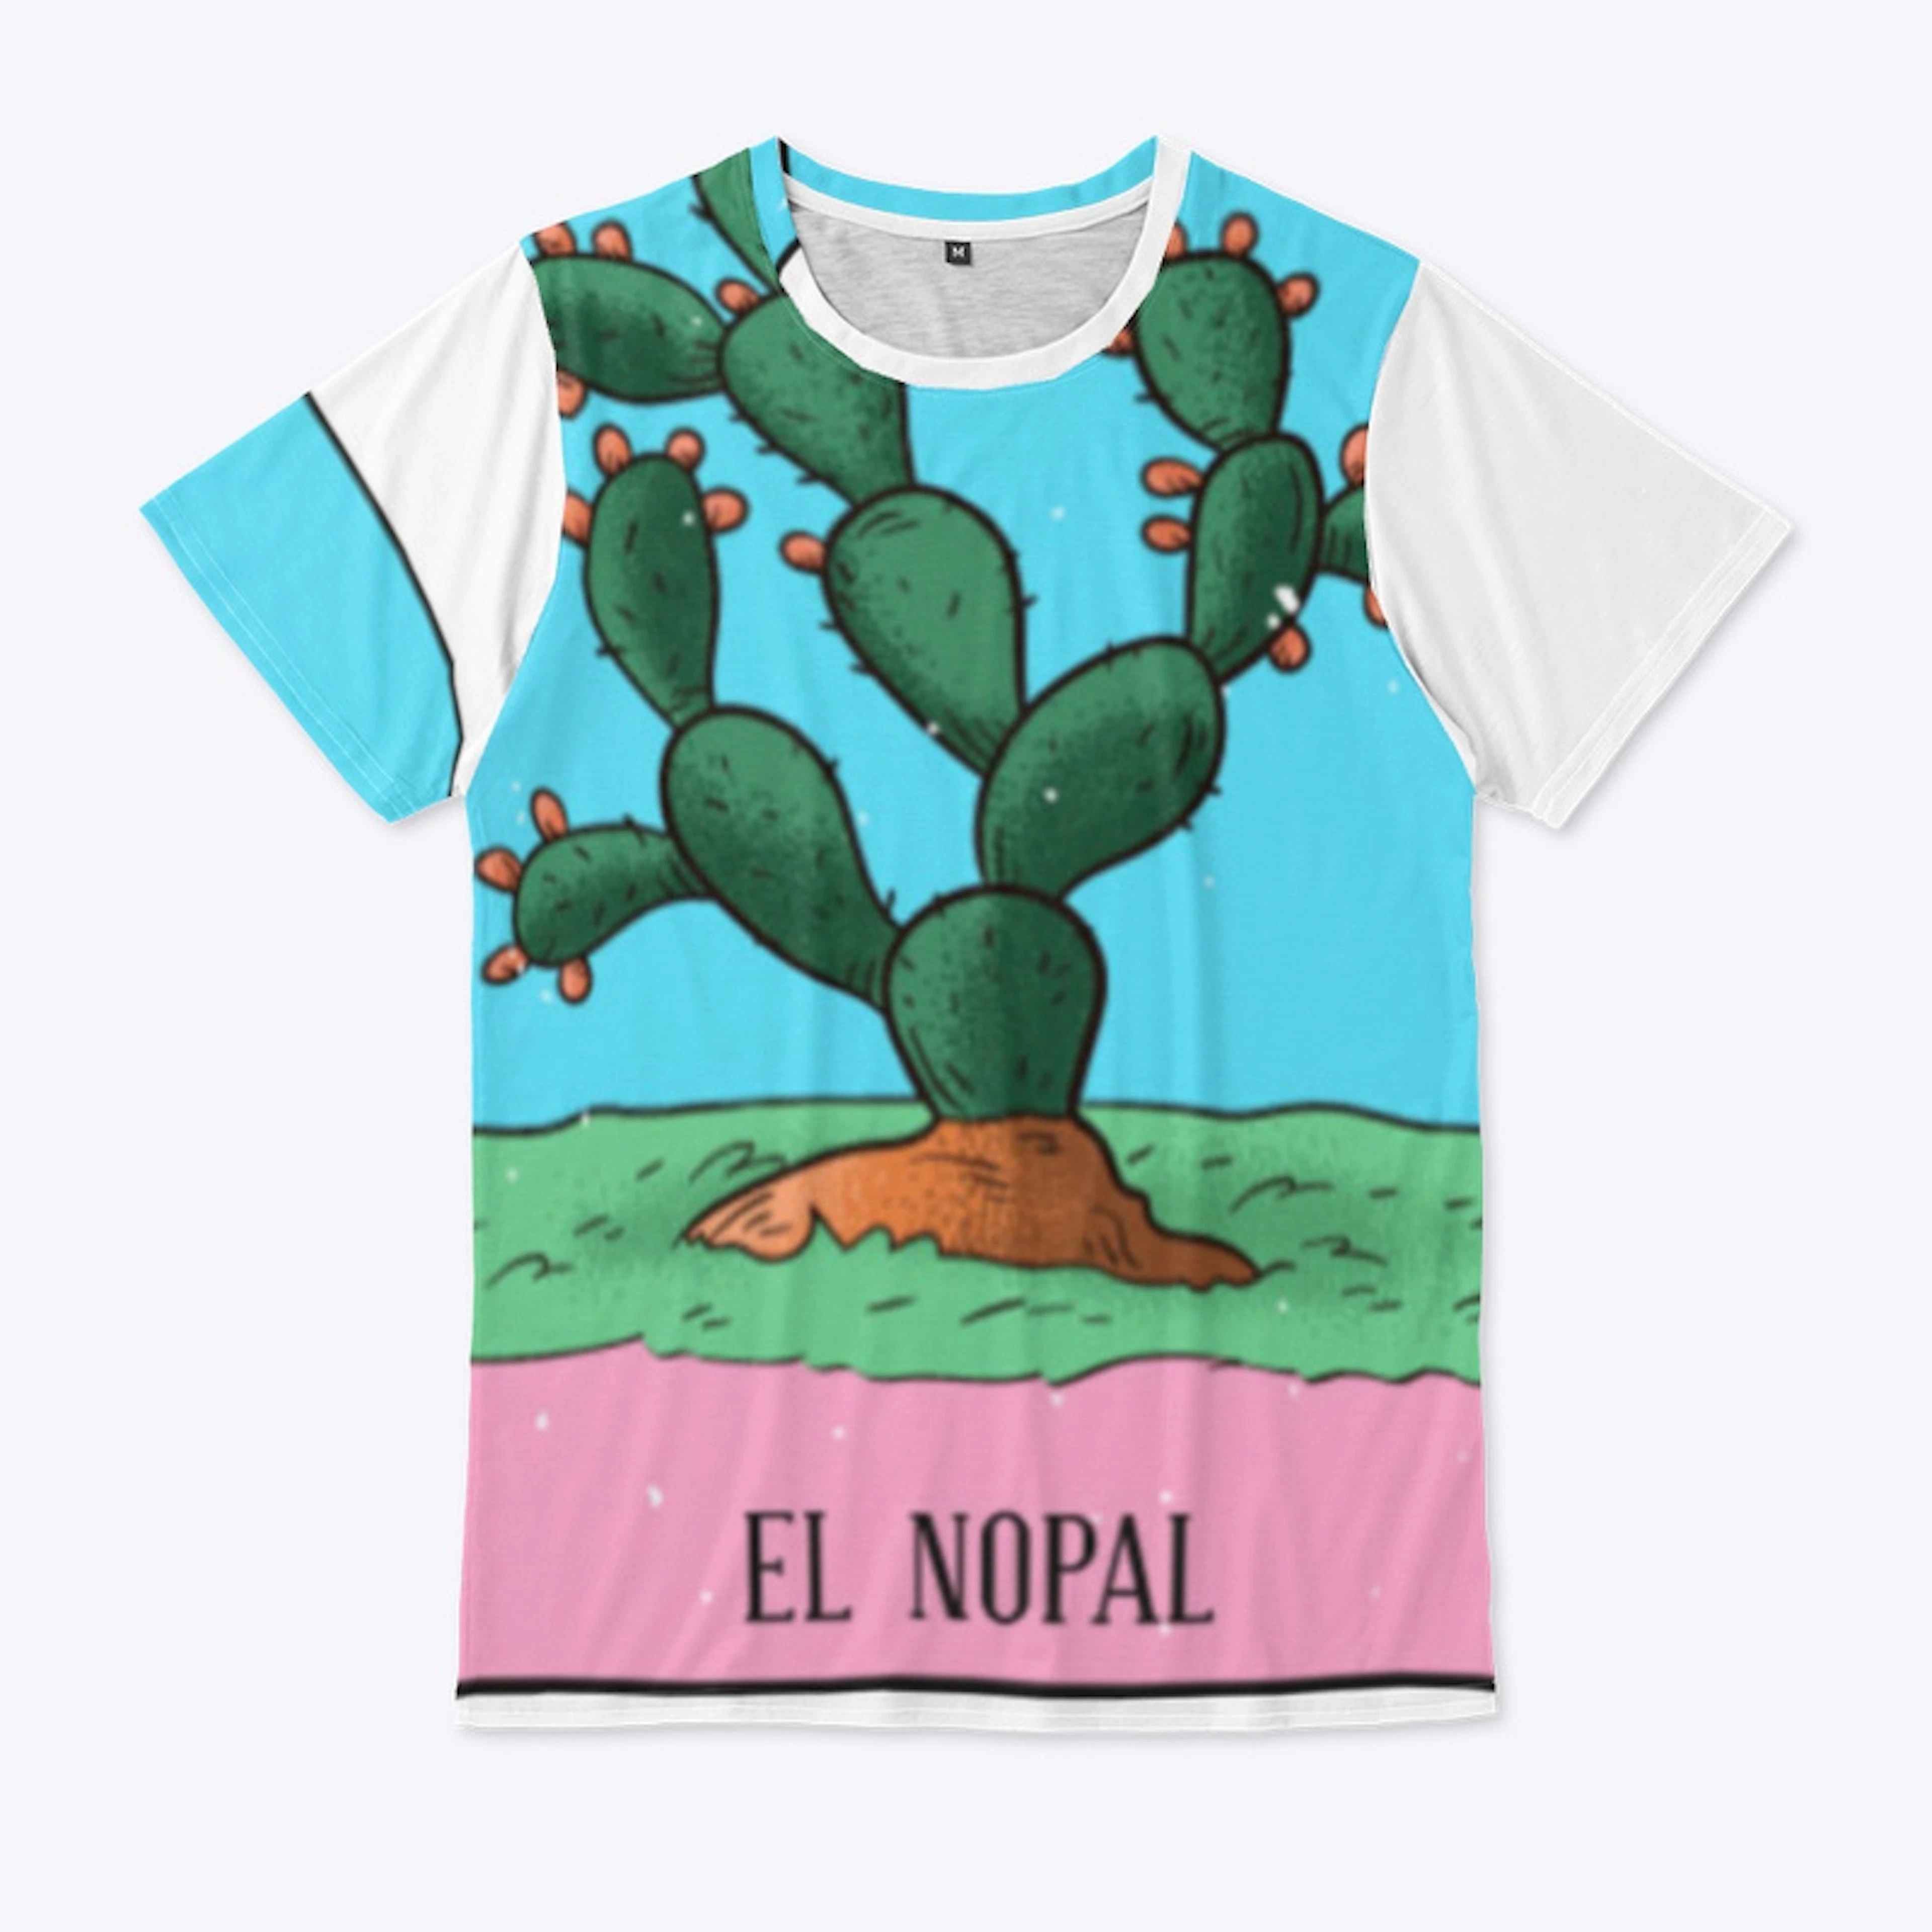 El Nopal - Mexico Collection